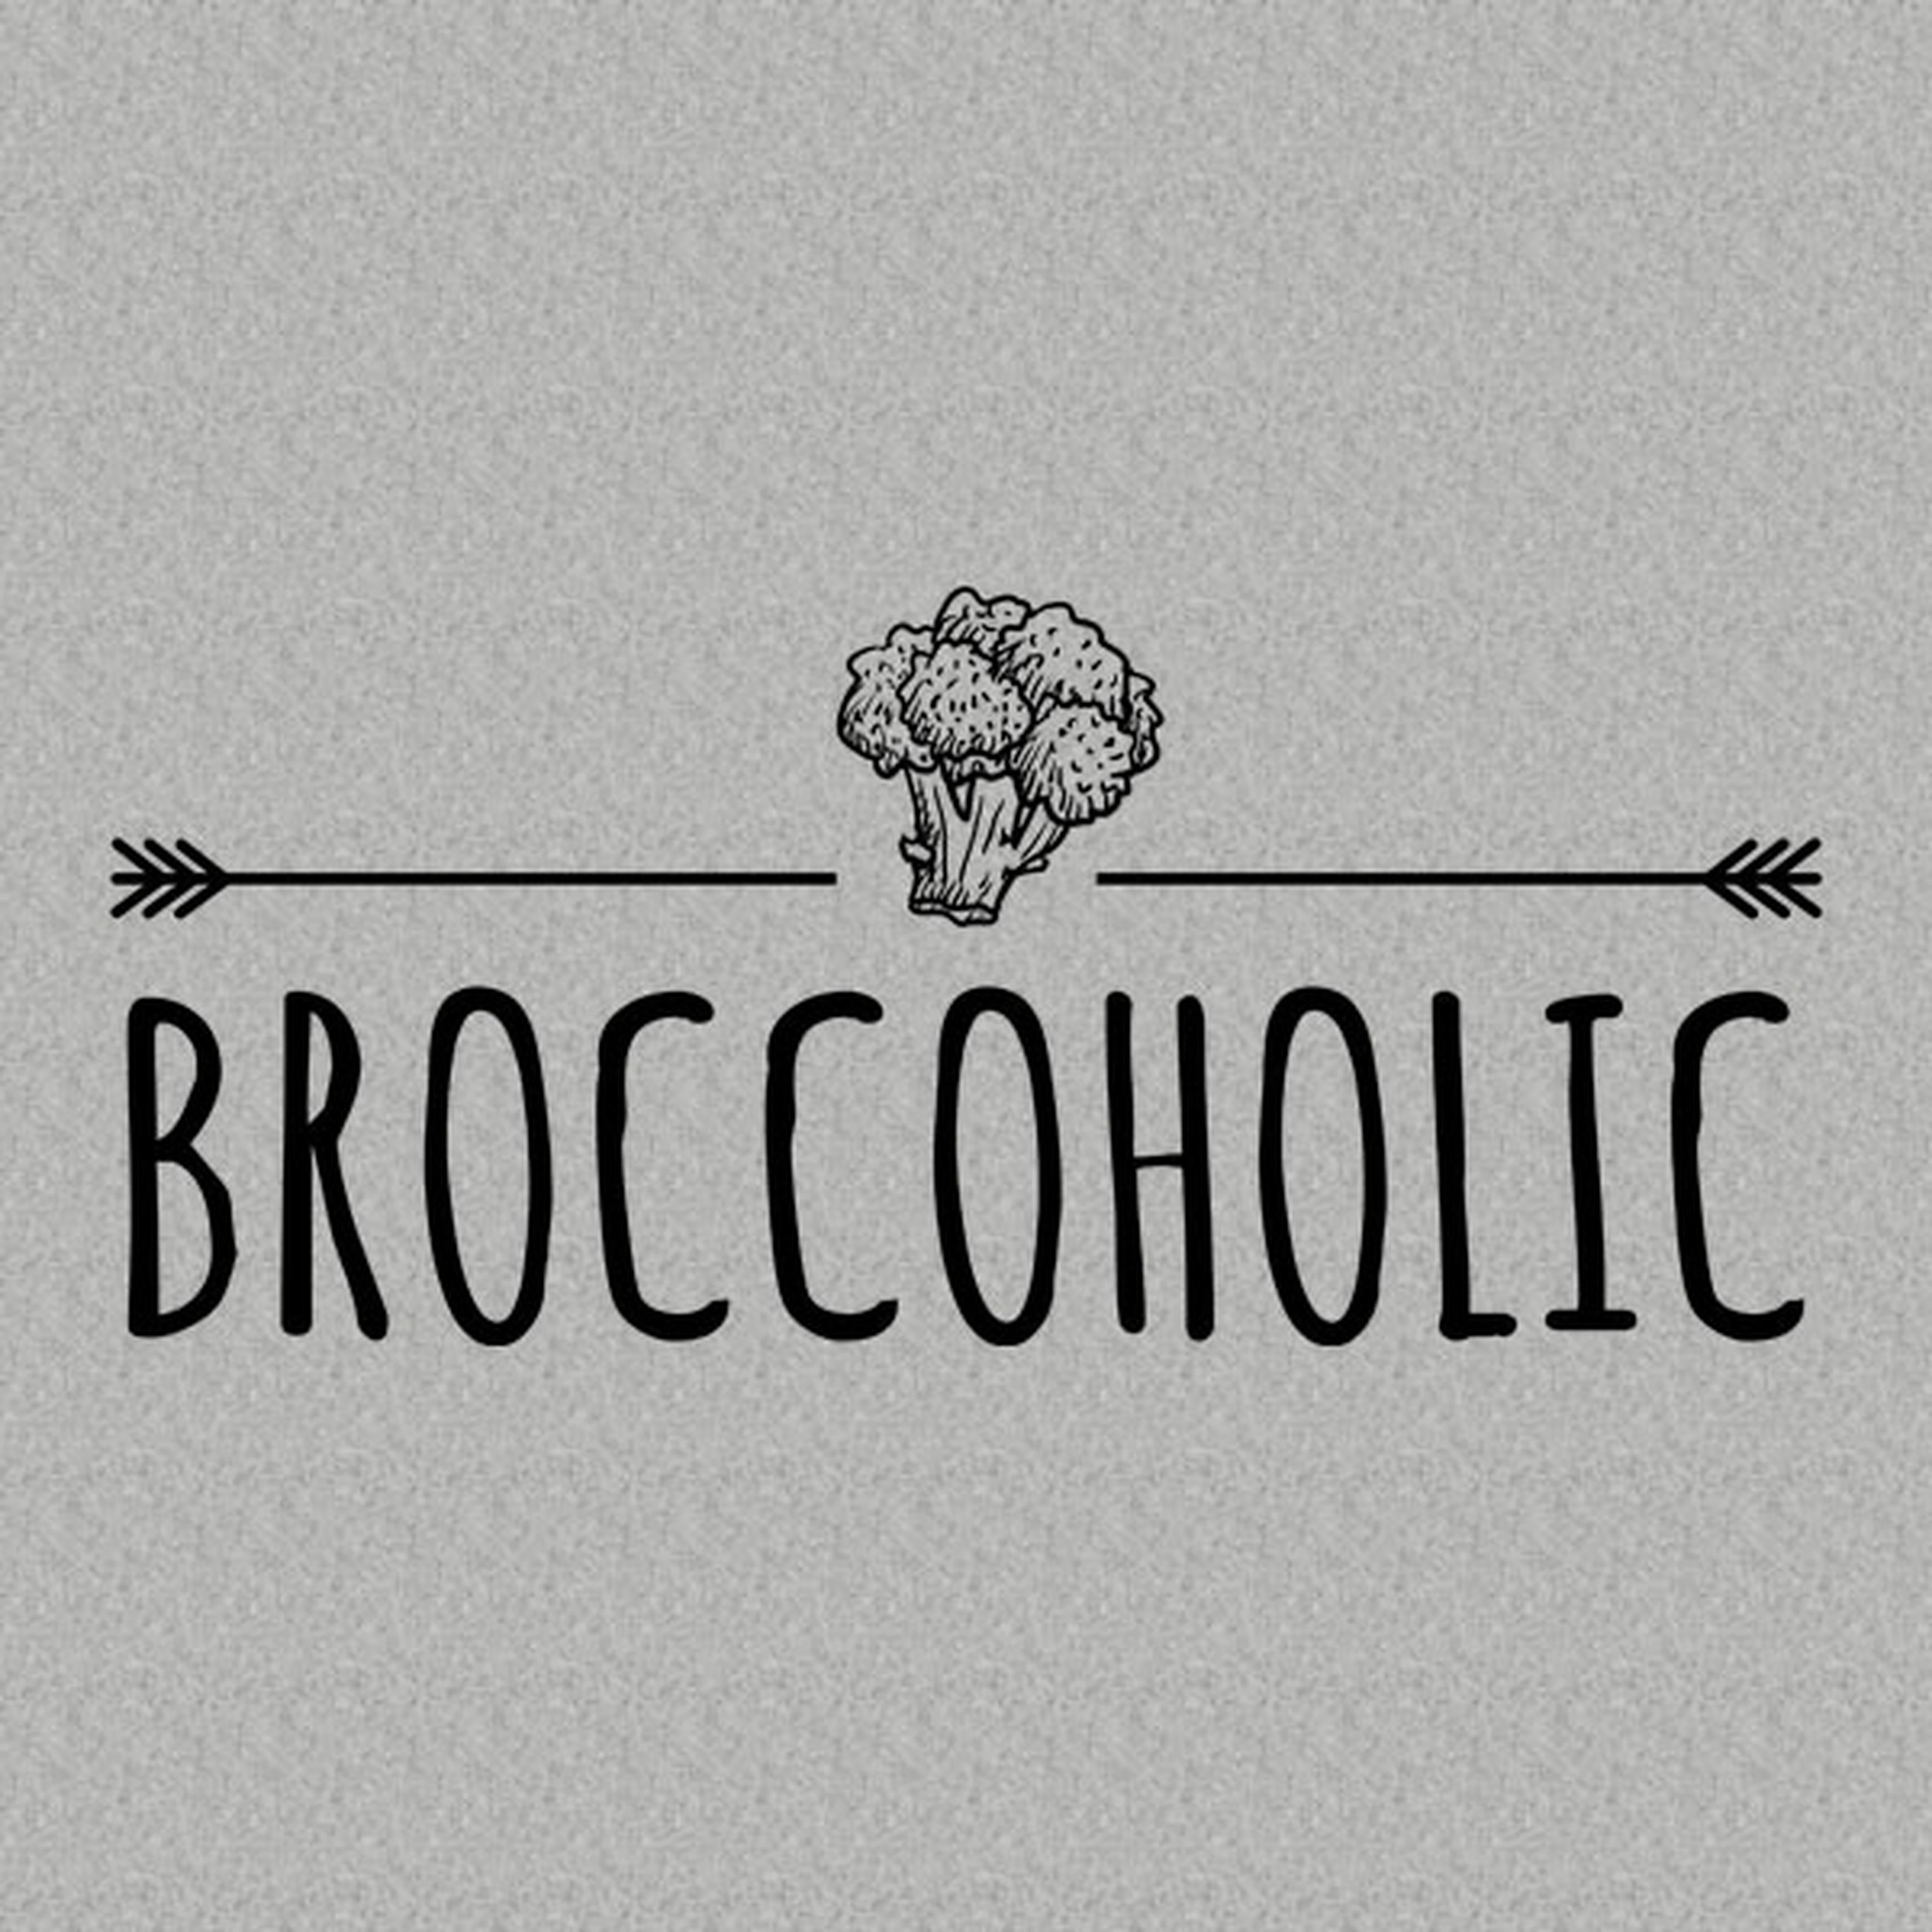 Broccoholic - T-shirt